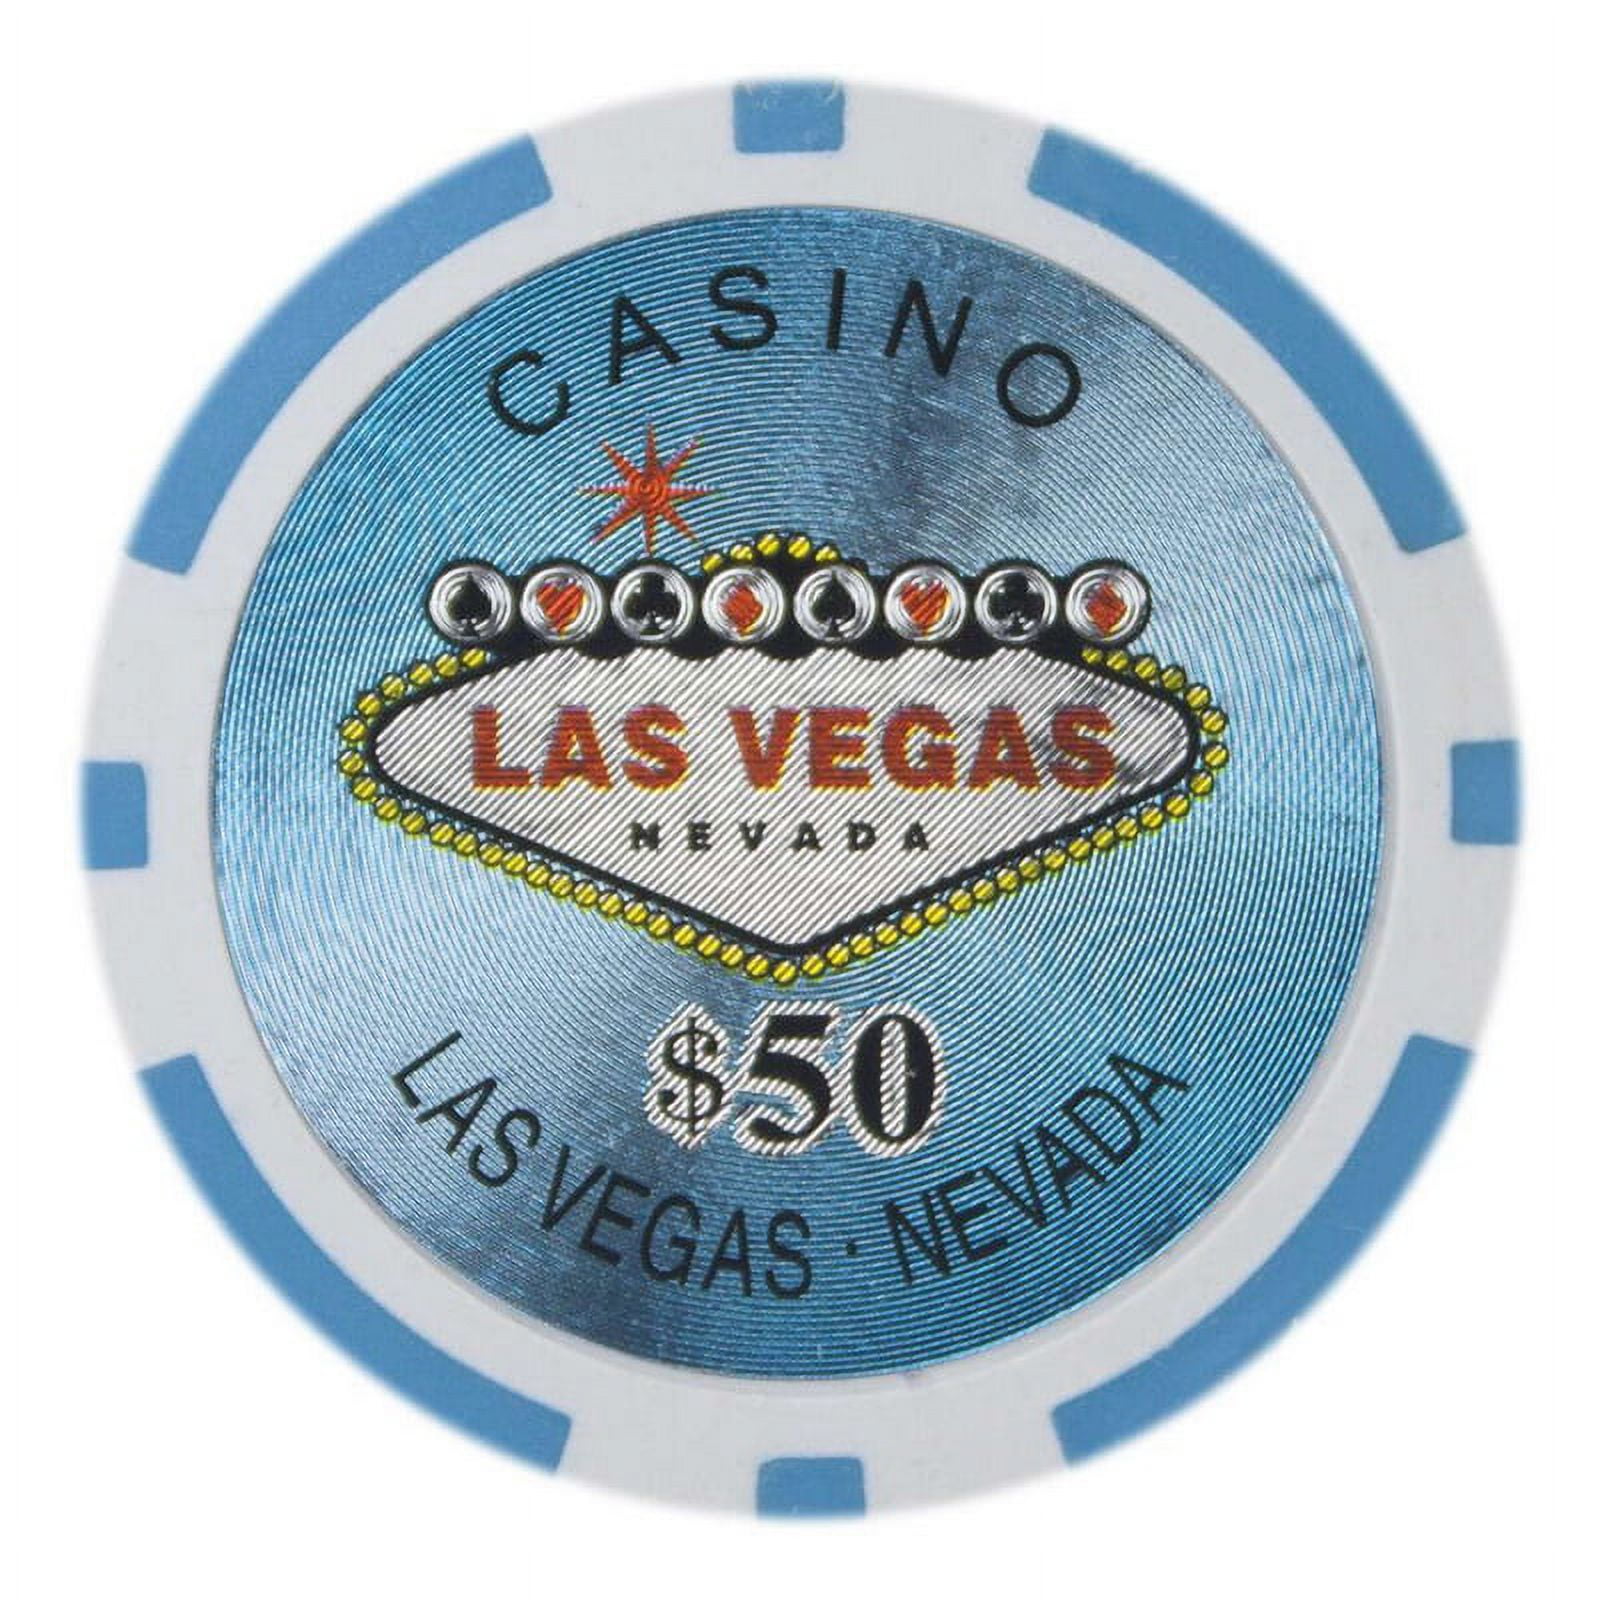 Cplv-50-25 14 G Las Vegas - Dollar 50, Roll Of 25